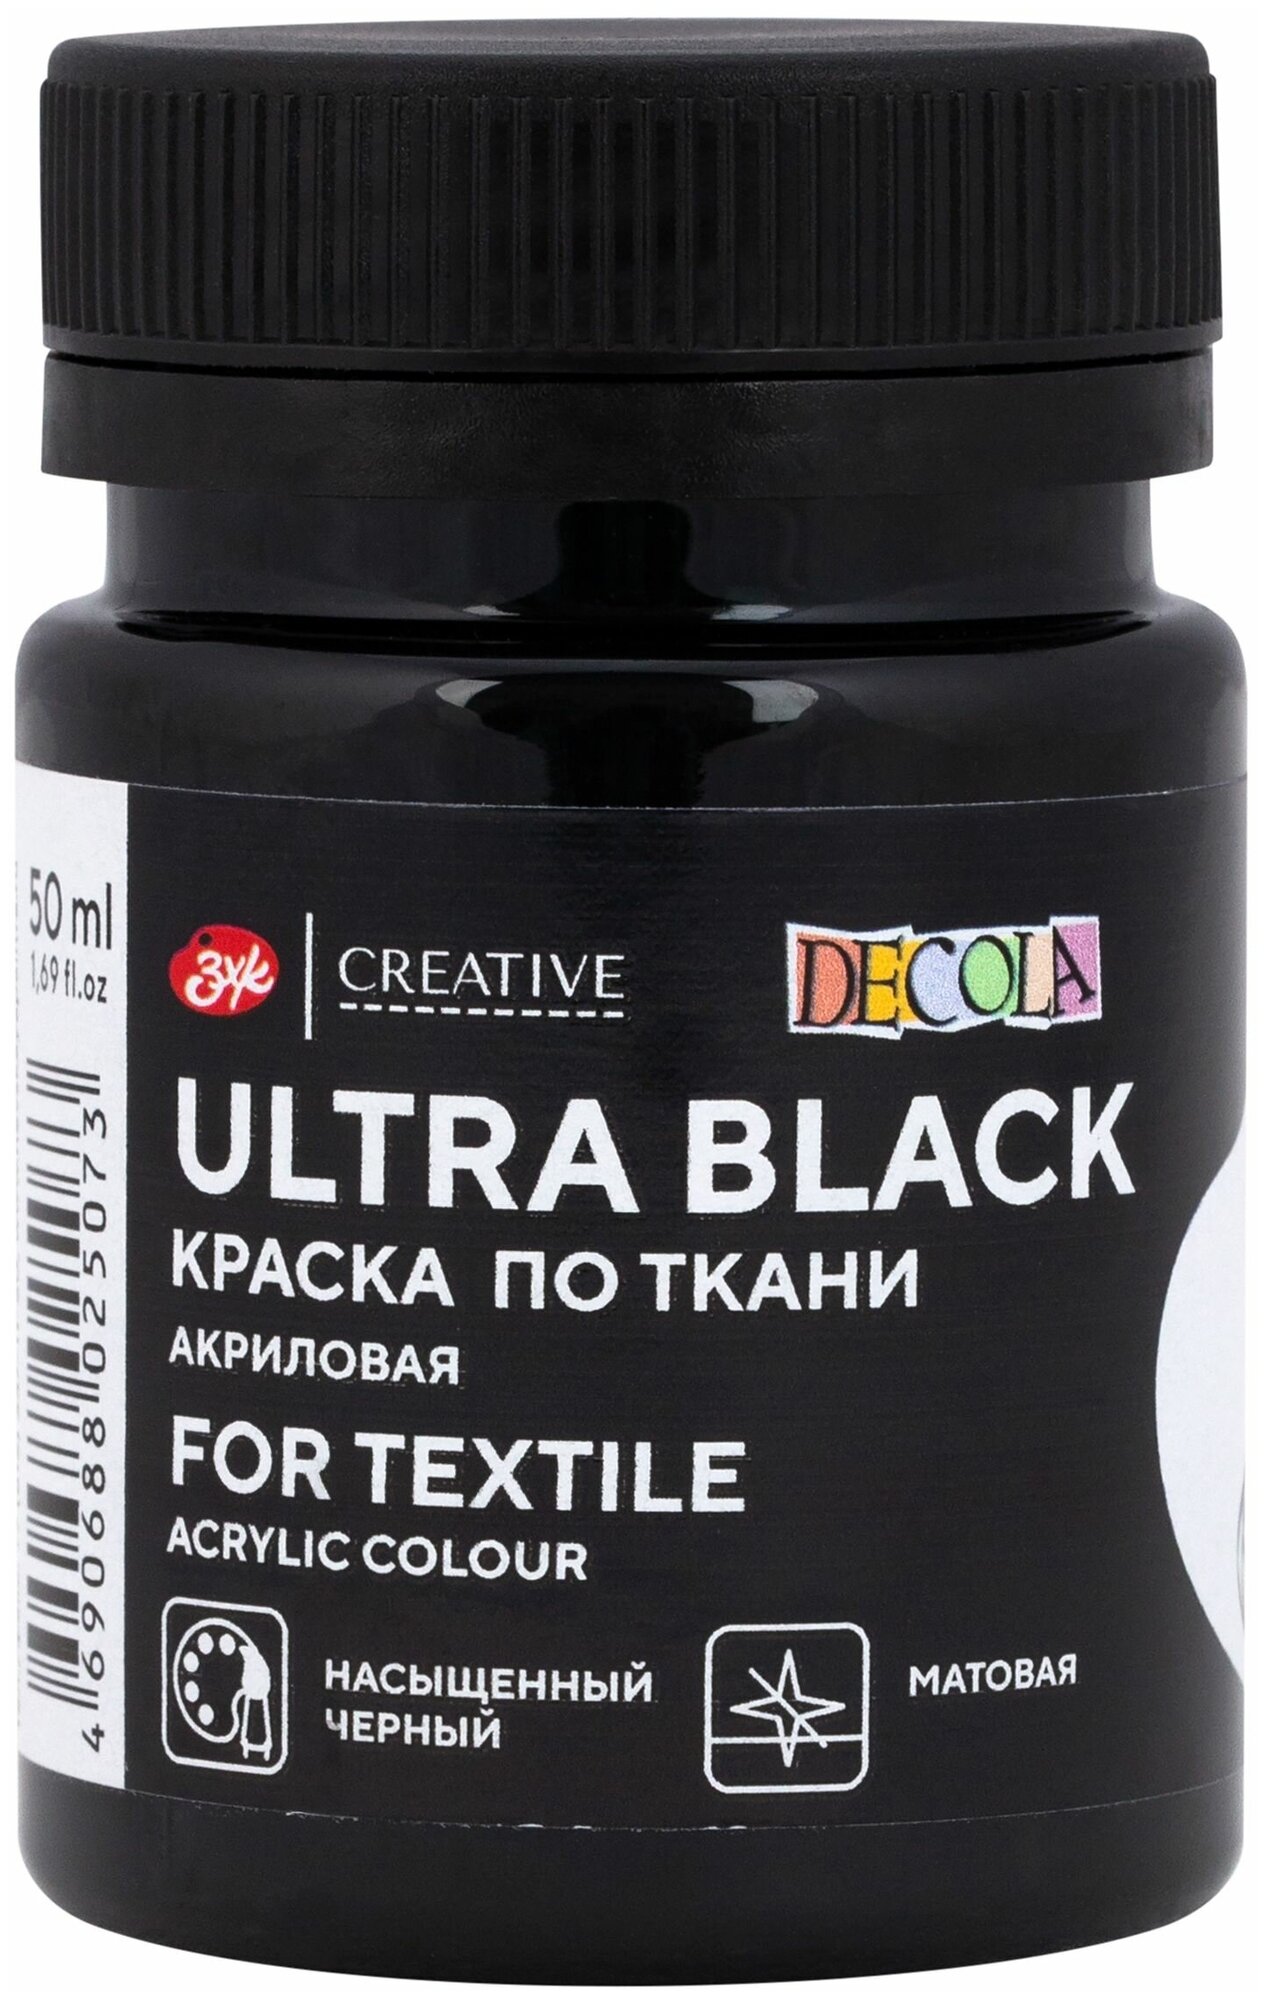 Краска акриловая для рисования по ткани Невская палитра DECOLA, 50 мл, ультра чёрная